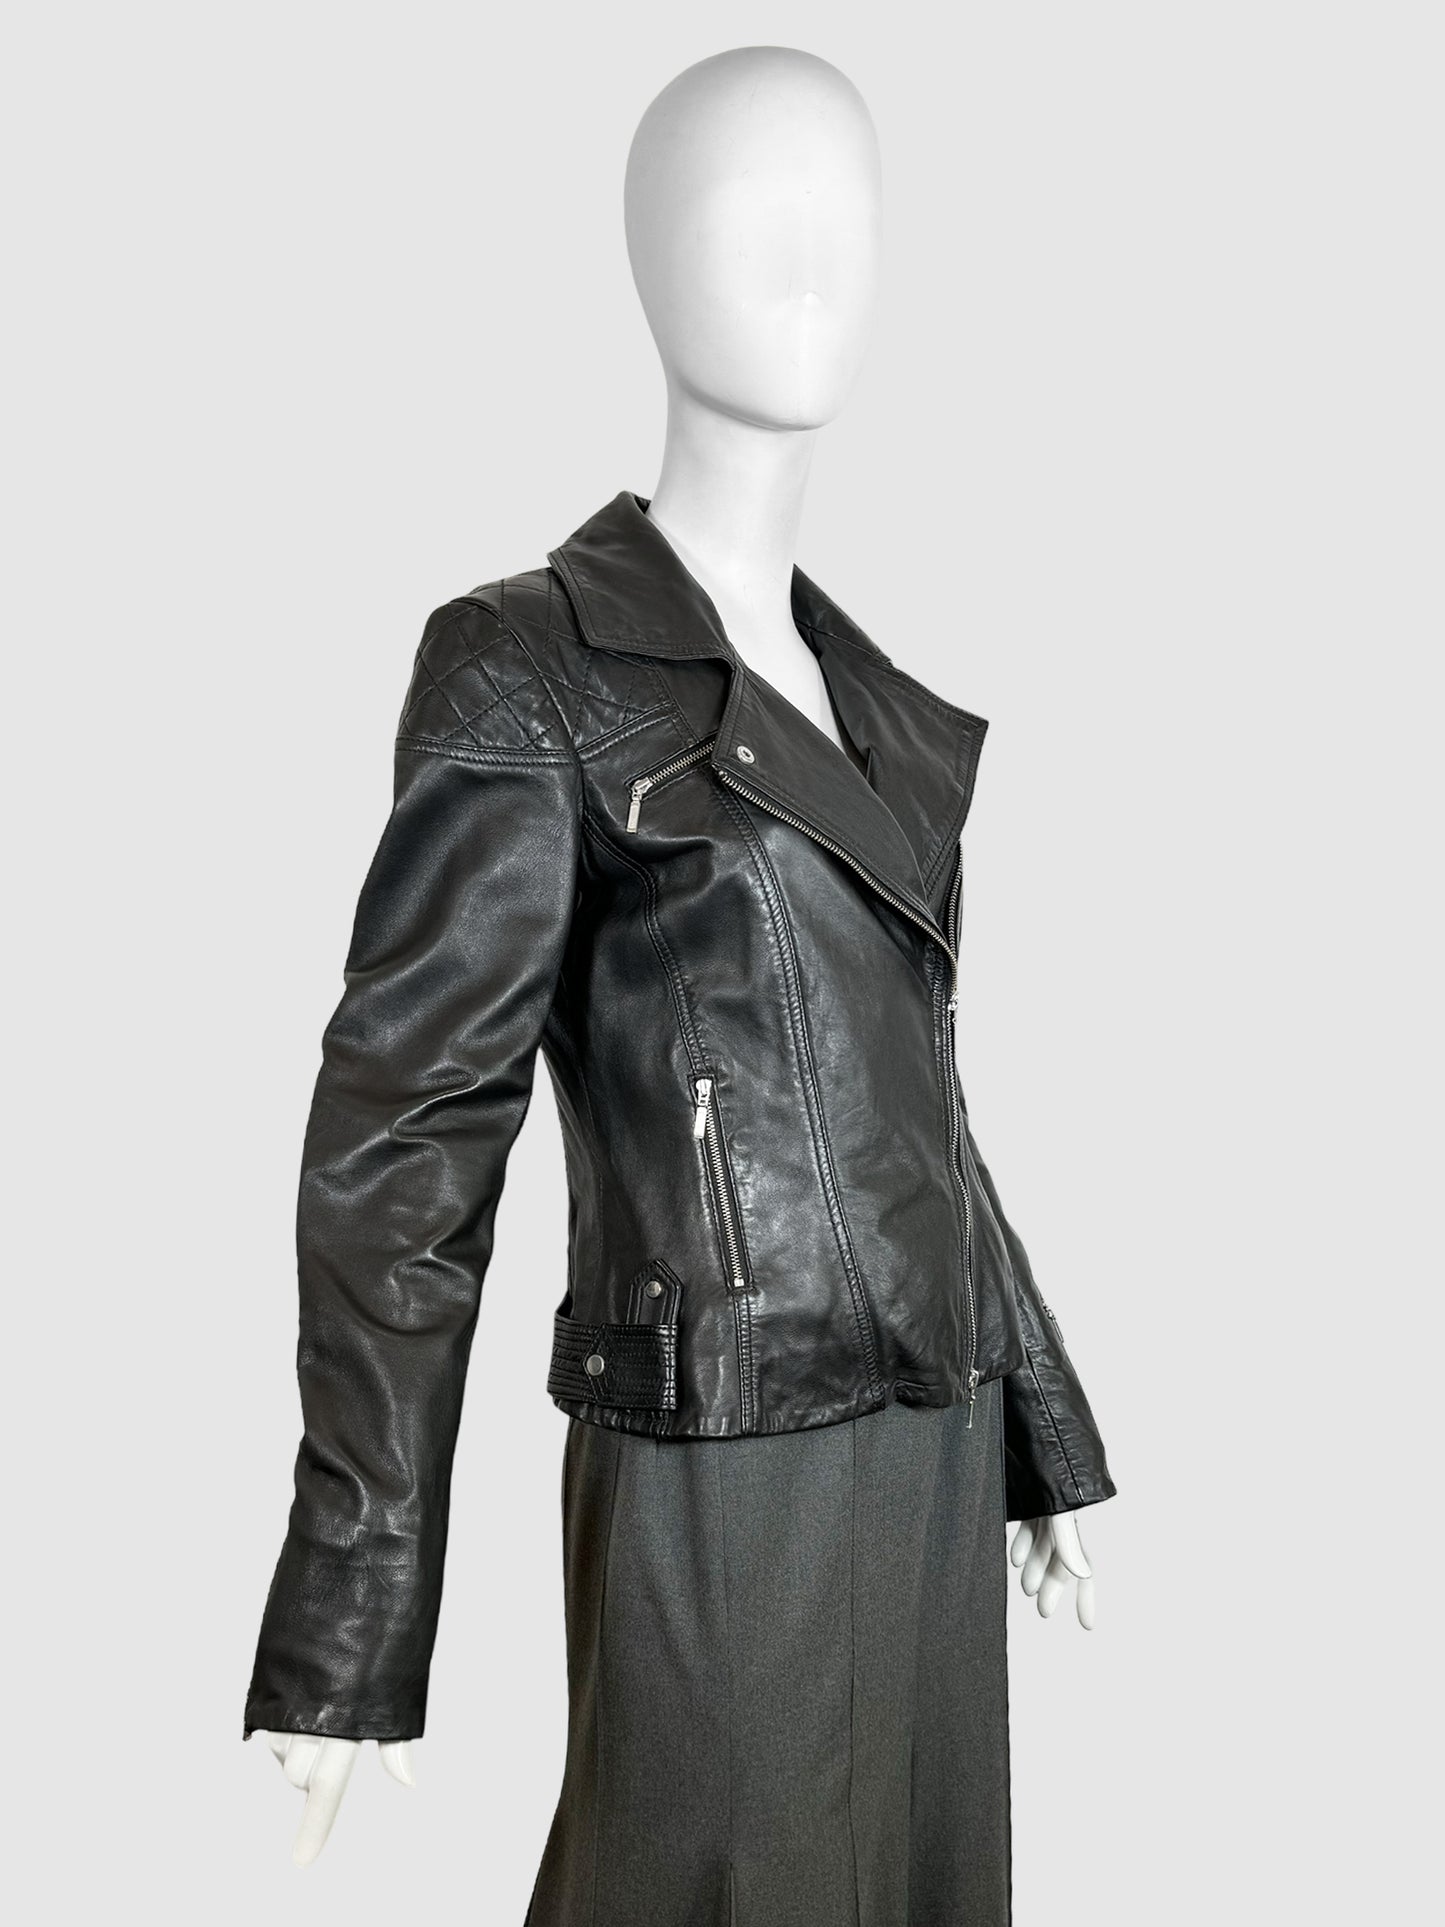 Blink Leather Biker Jacket - Size S